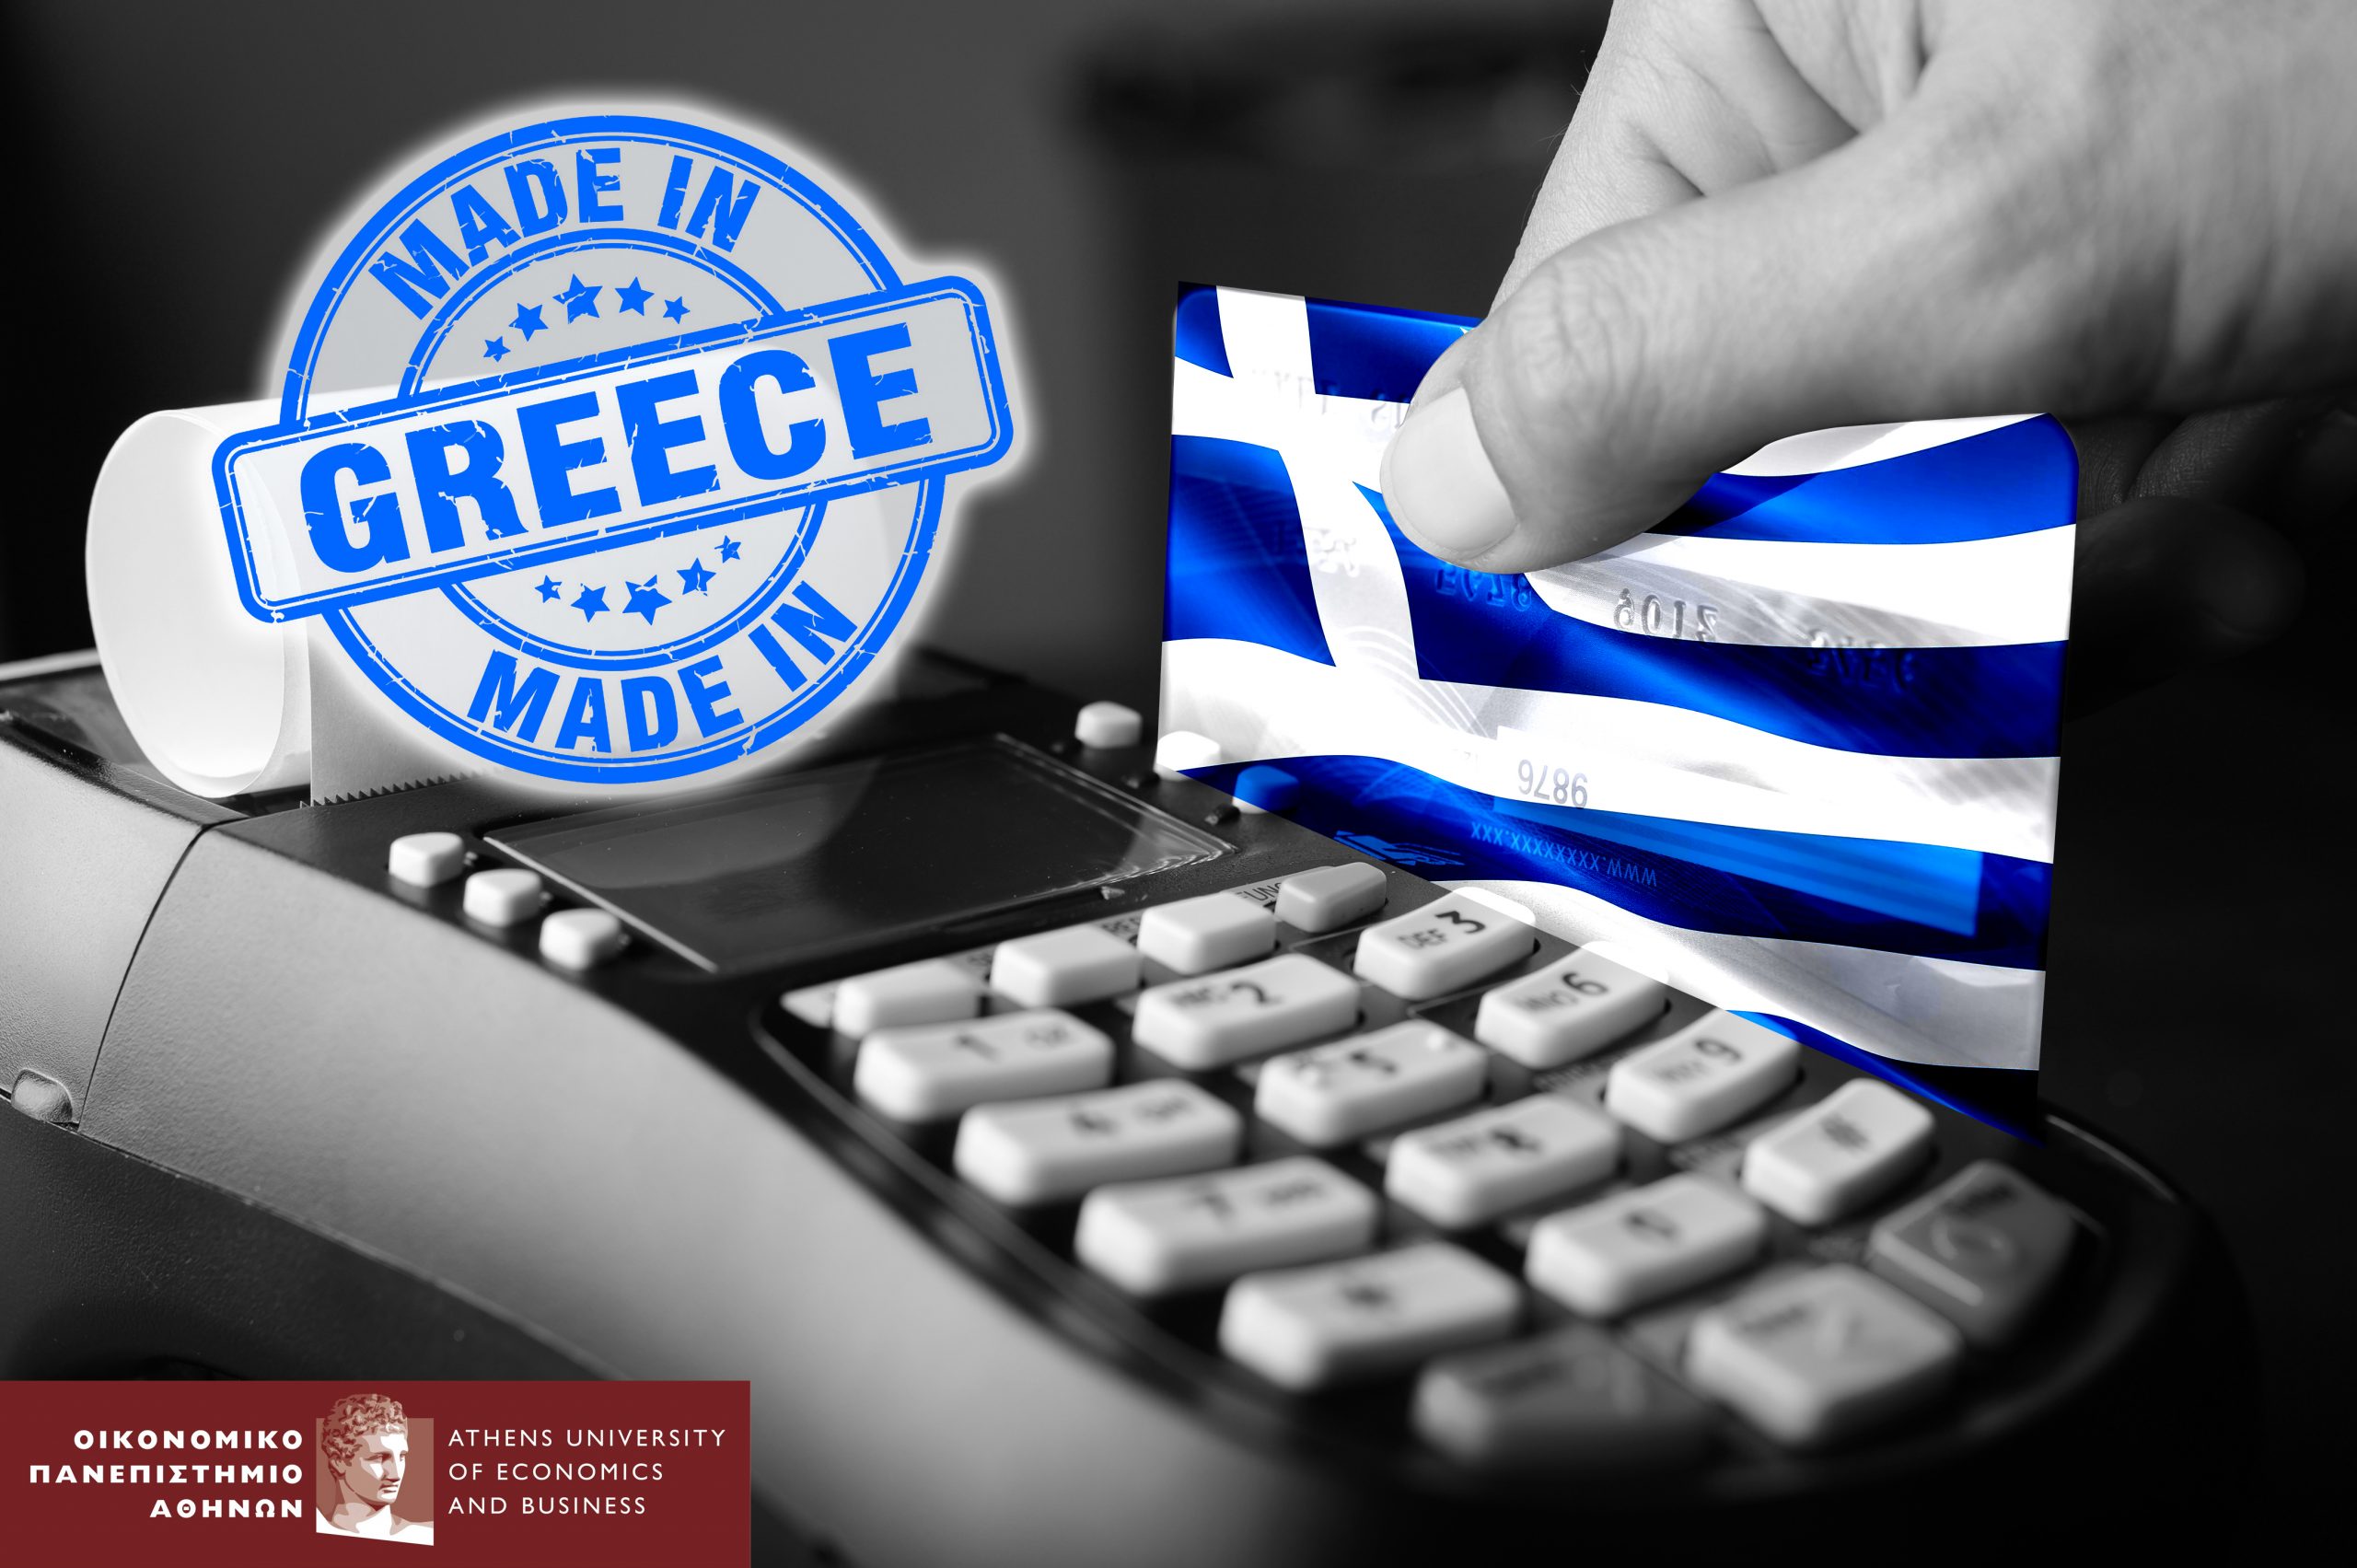 Λιανεμπόριο : Στροφή στο made in Greece (έρευνα)